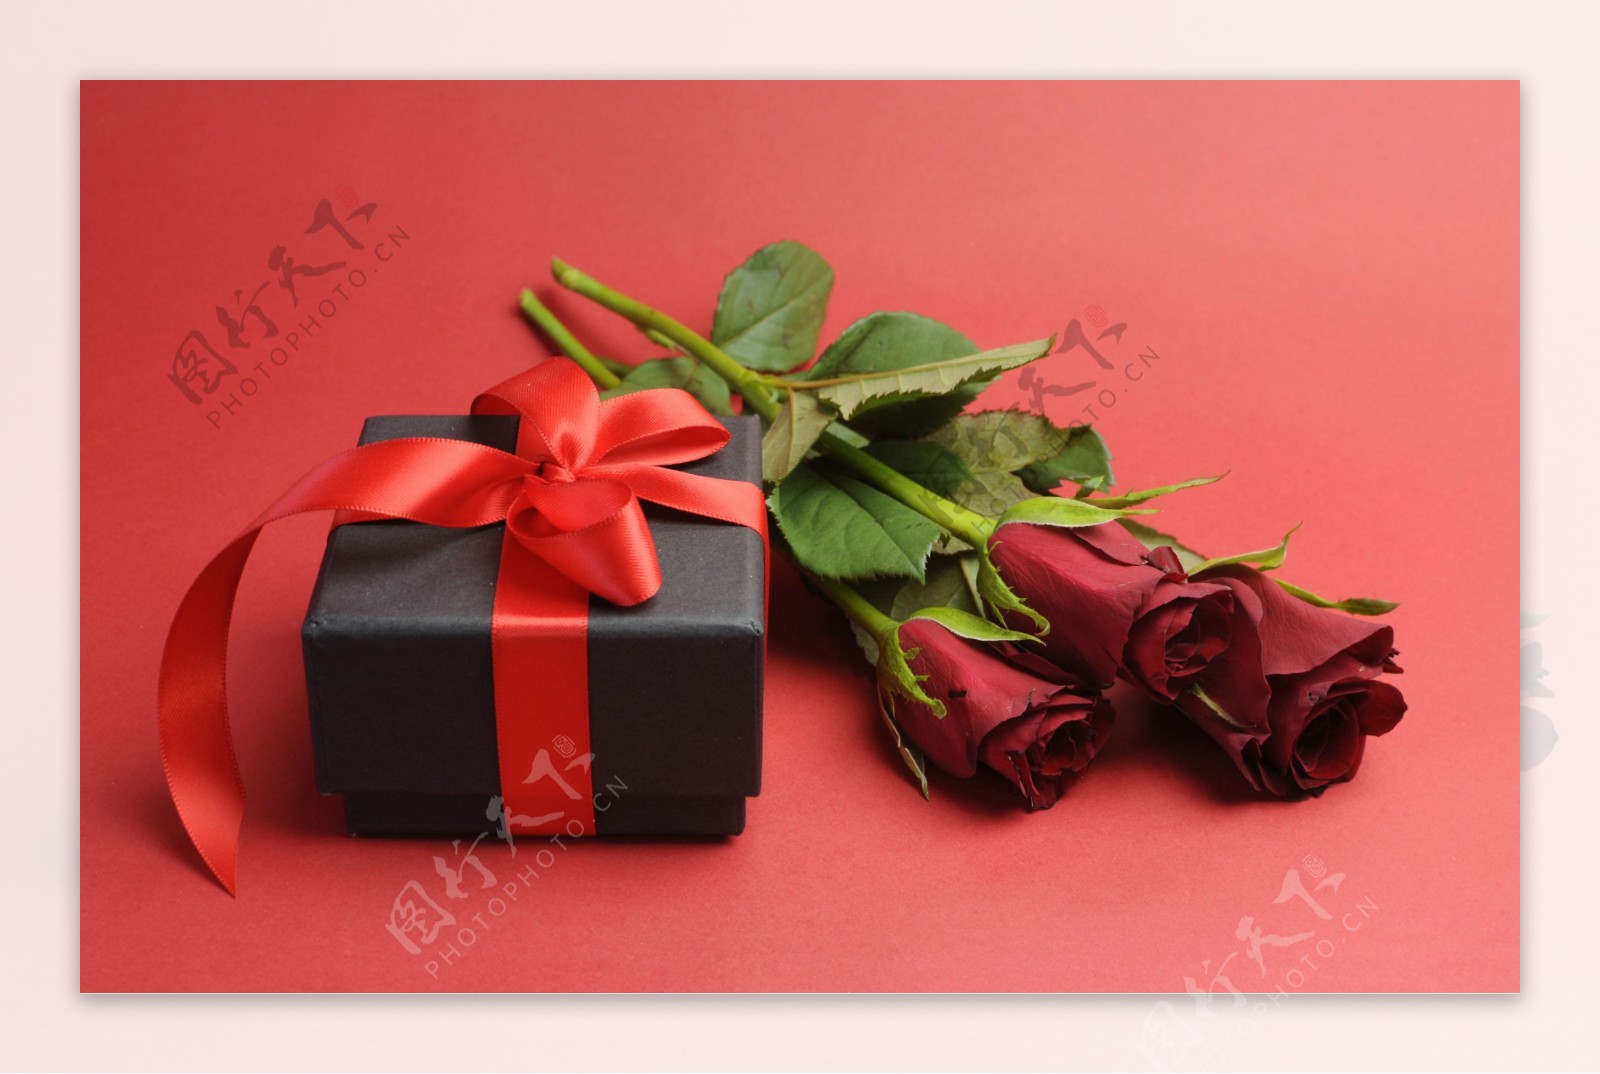 玫瑰花礼盒图片